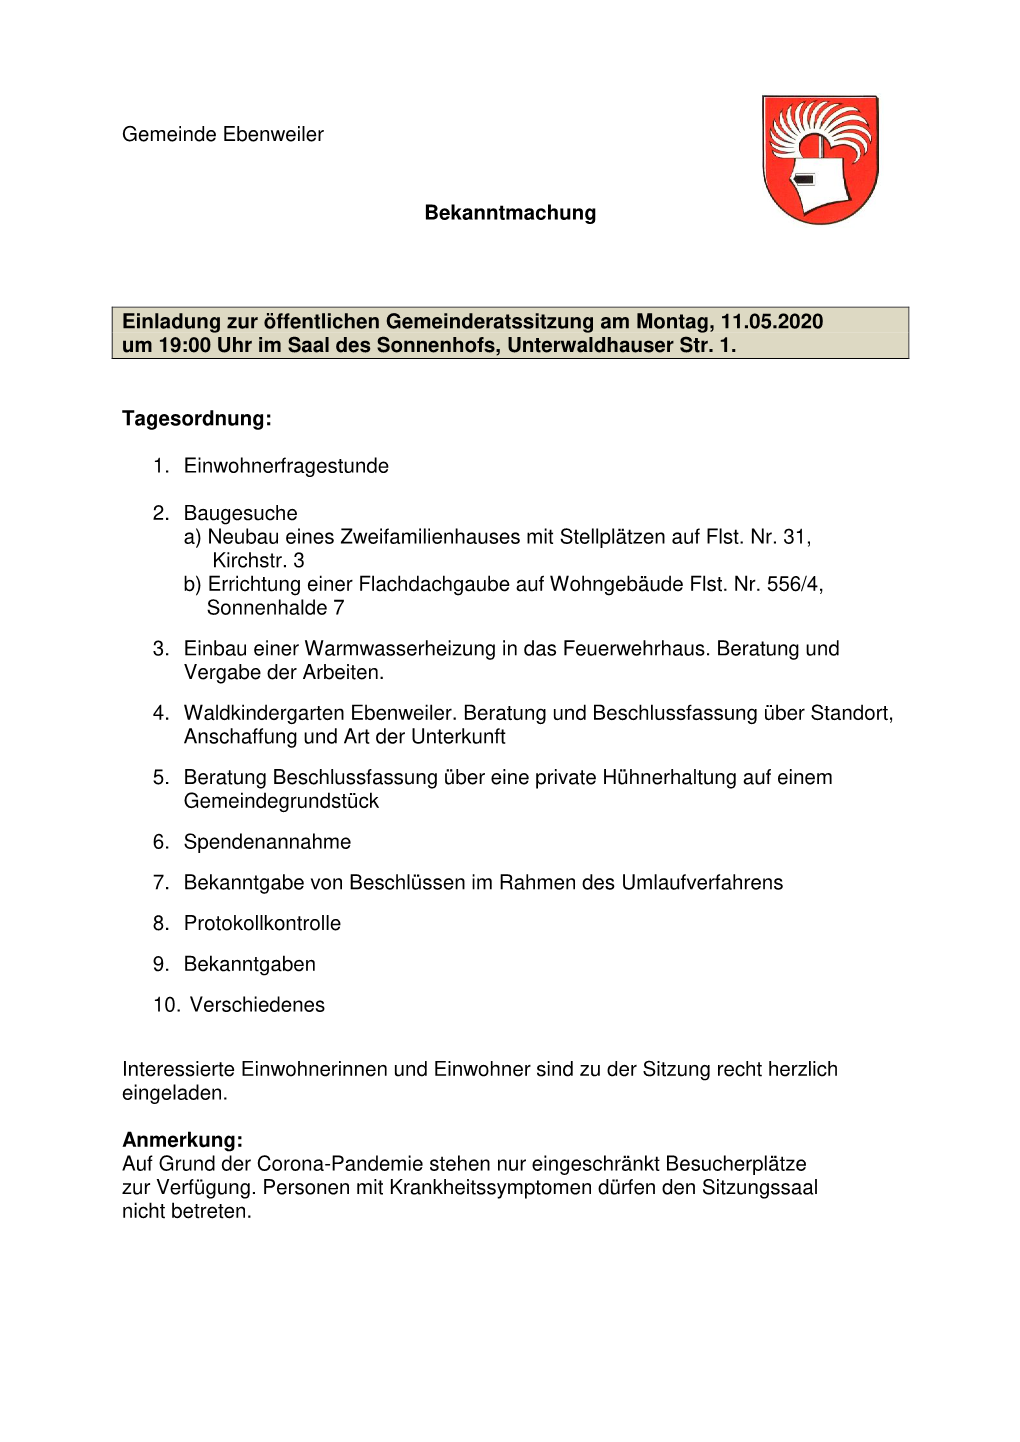 Gemeinde Ebenweiler Bekanntmachung Einladung Zur Öffentlichen Gemeinderatssitzung Am Montag, 11.05.2020 Um 19:00 Uhr Im Saal De